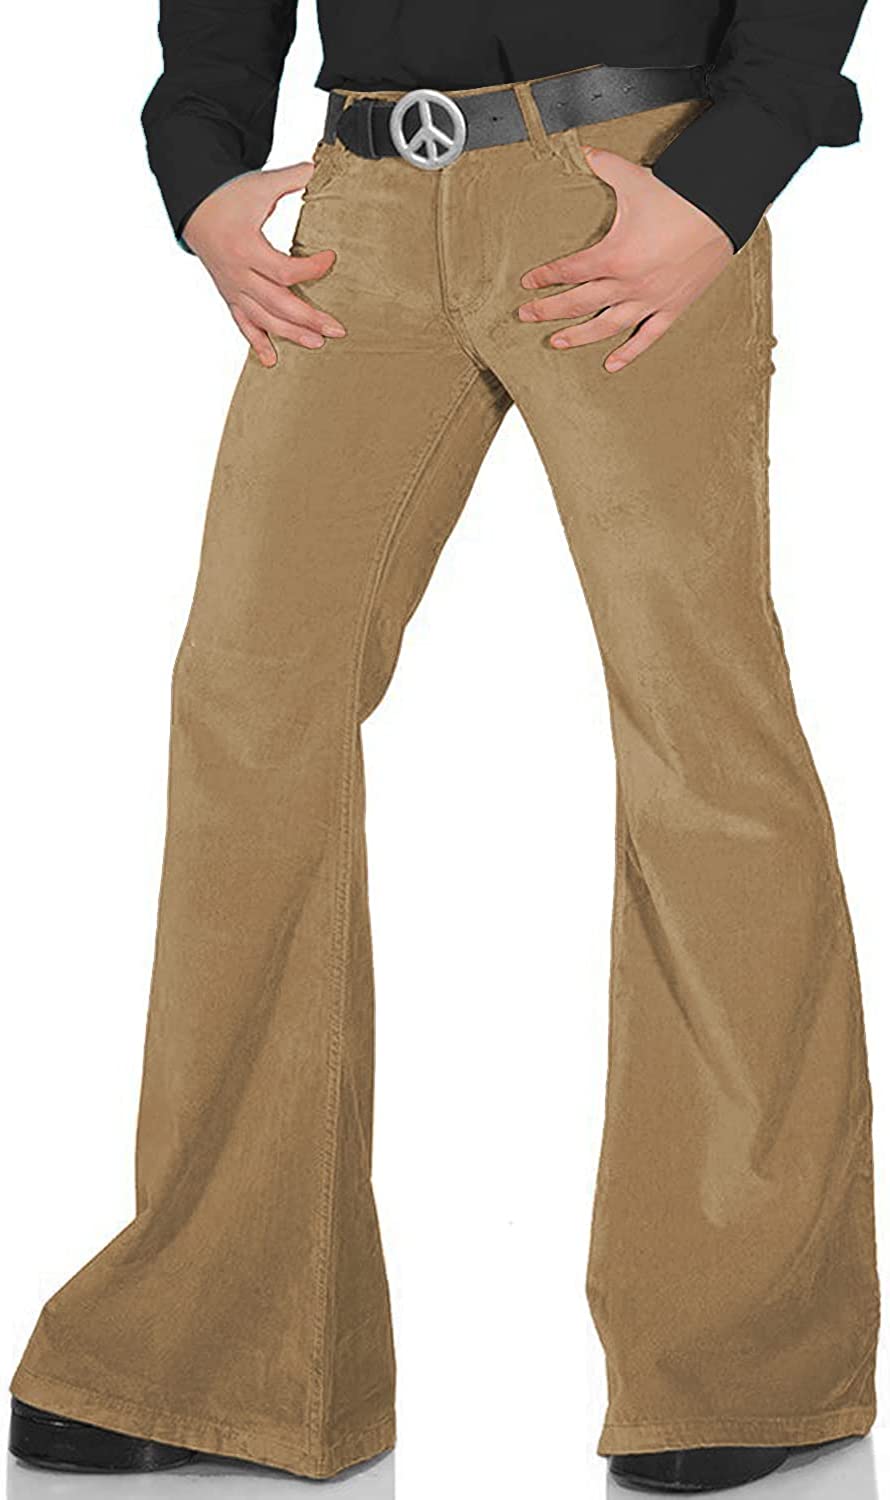  70s Disco Pants For Men,Mens Bell Bottom Jeans Pants,60s 70s  Bell Bottoms Vintage Denim Pants Jeans For Men Red